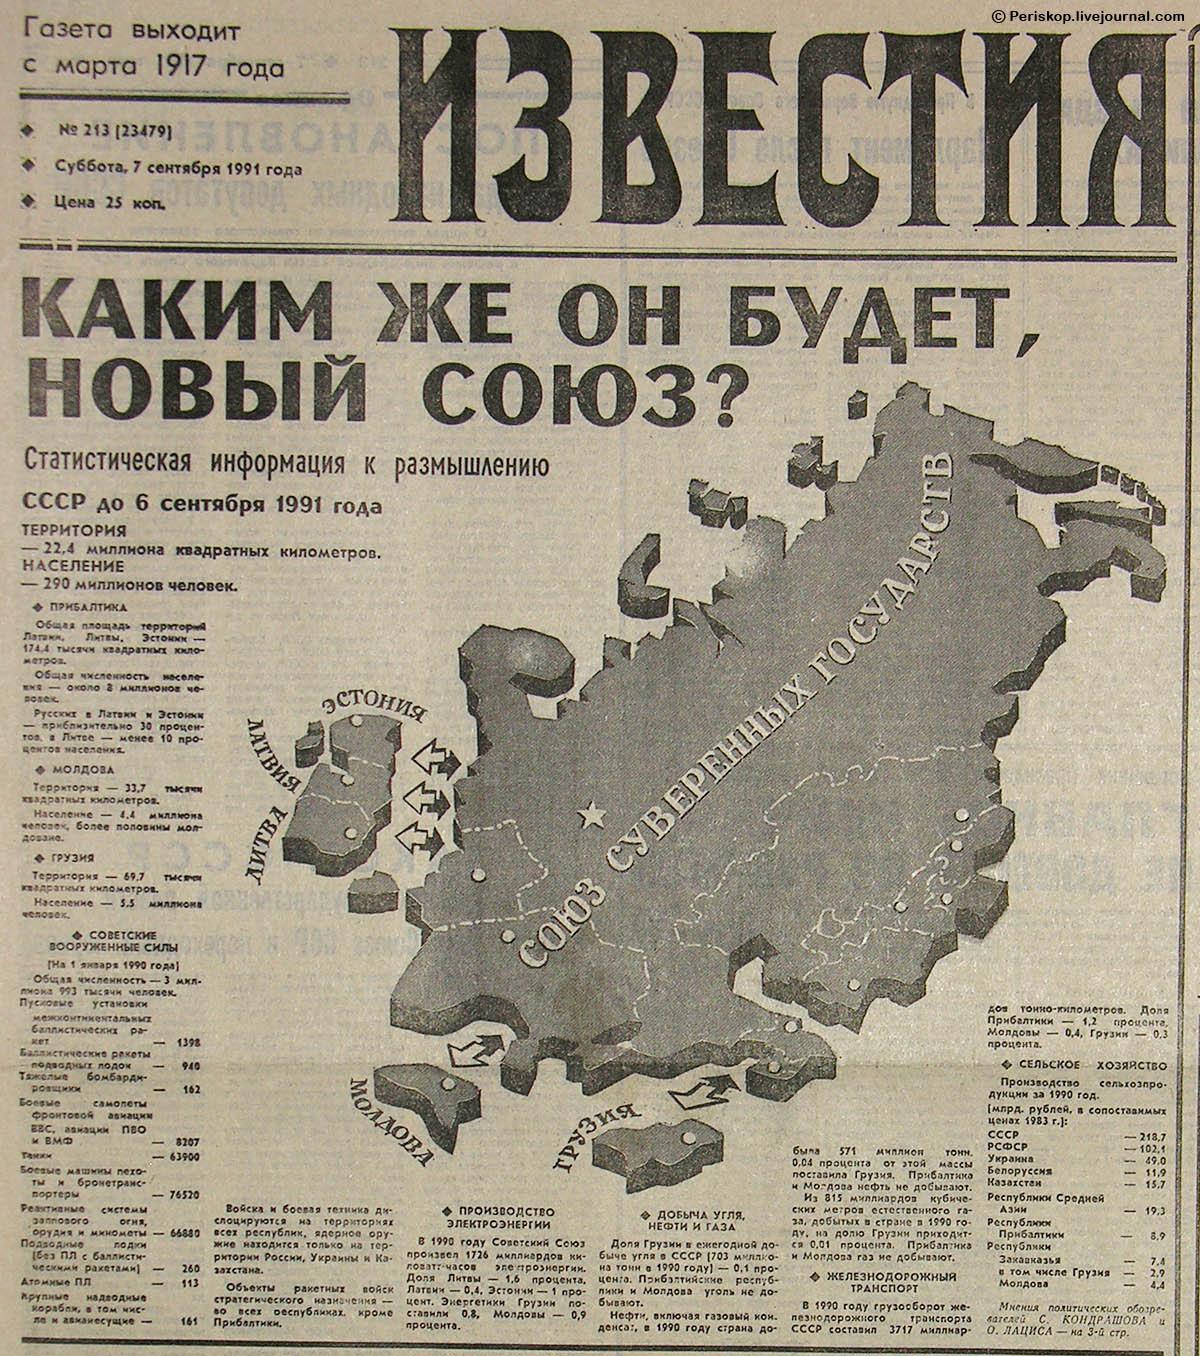 Период распада СССР. "Известия" от 7 сентября 1991 года. 